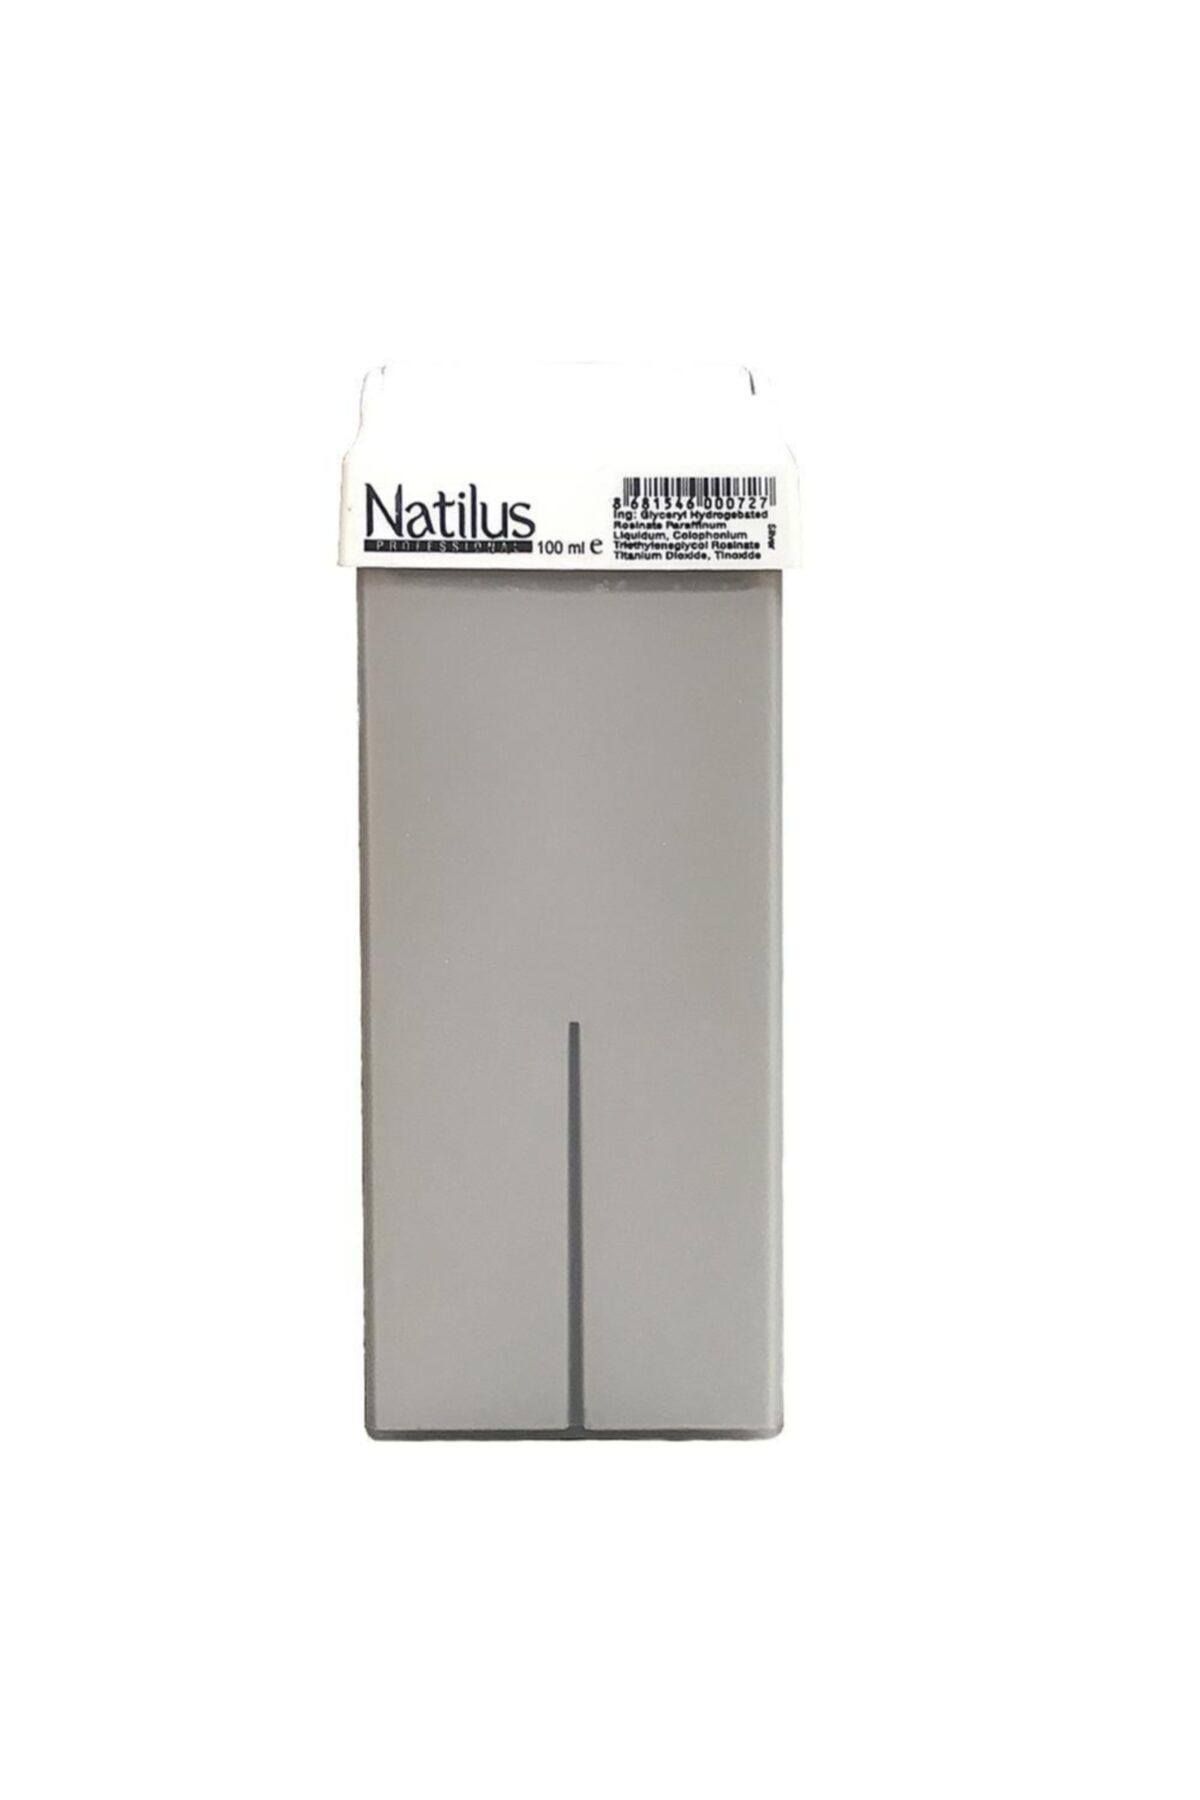 Natilus Kartuş Ağda Silver 100 ml